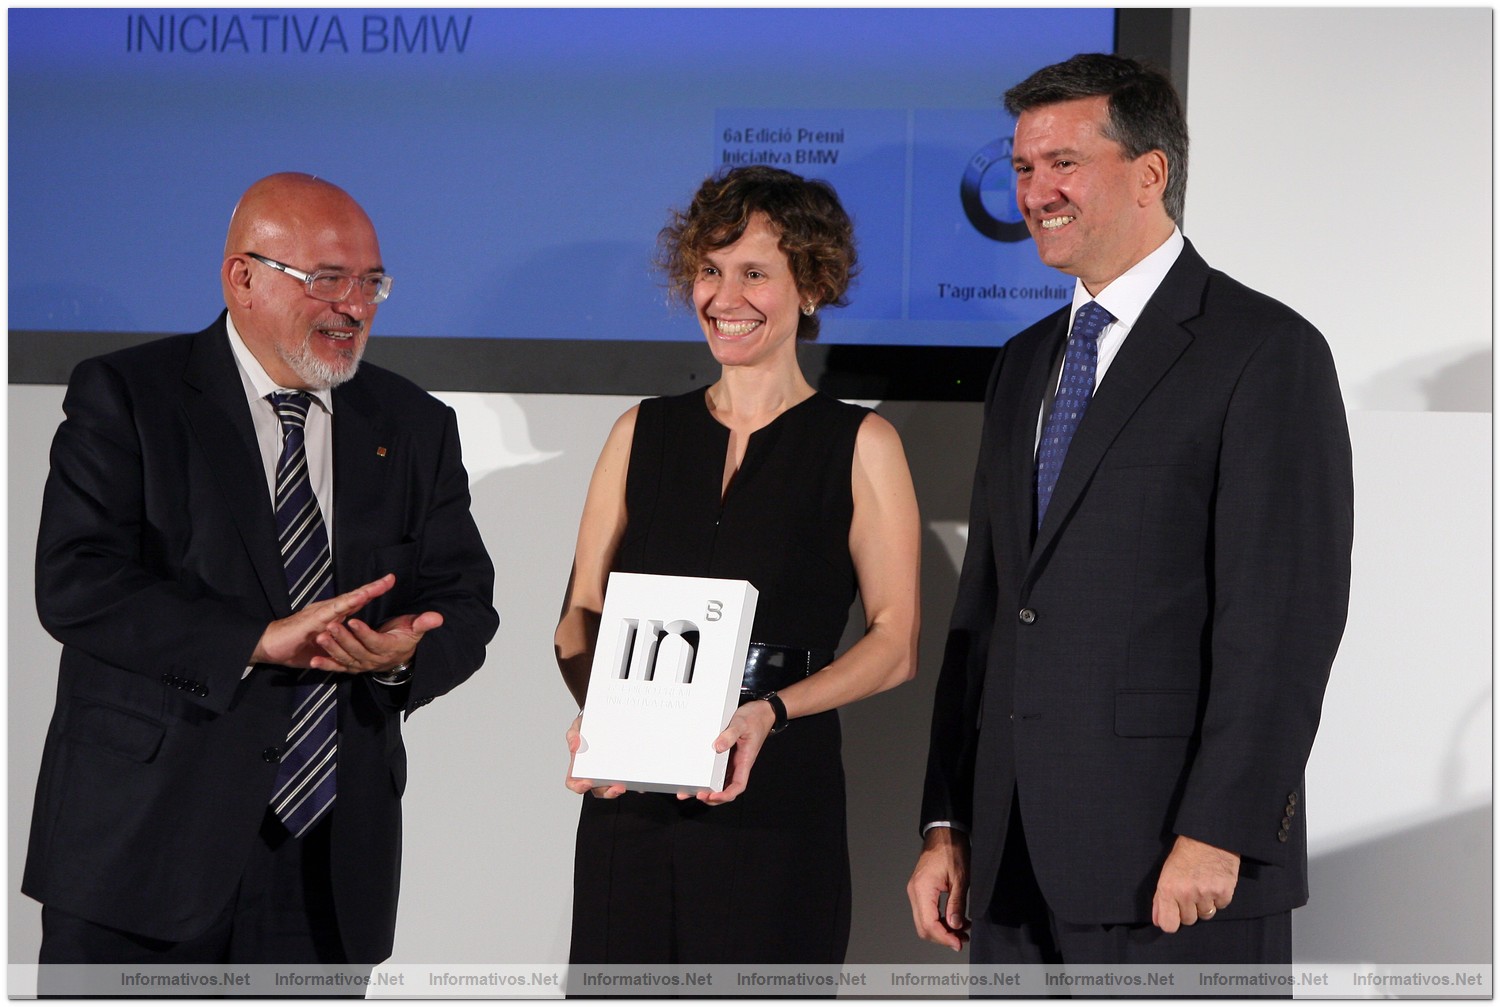 BCN26OCT010.- Premio Iniciativa BMW 2010. Josep Huguet (Dpto. Innovación del Govern de Cataluña), Dra. Cristina Quiles (Neuroscience Technologies) y Eduardo Villaverde (Pte. BMW España)